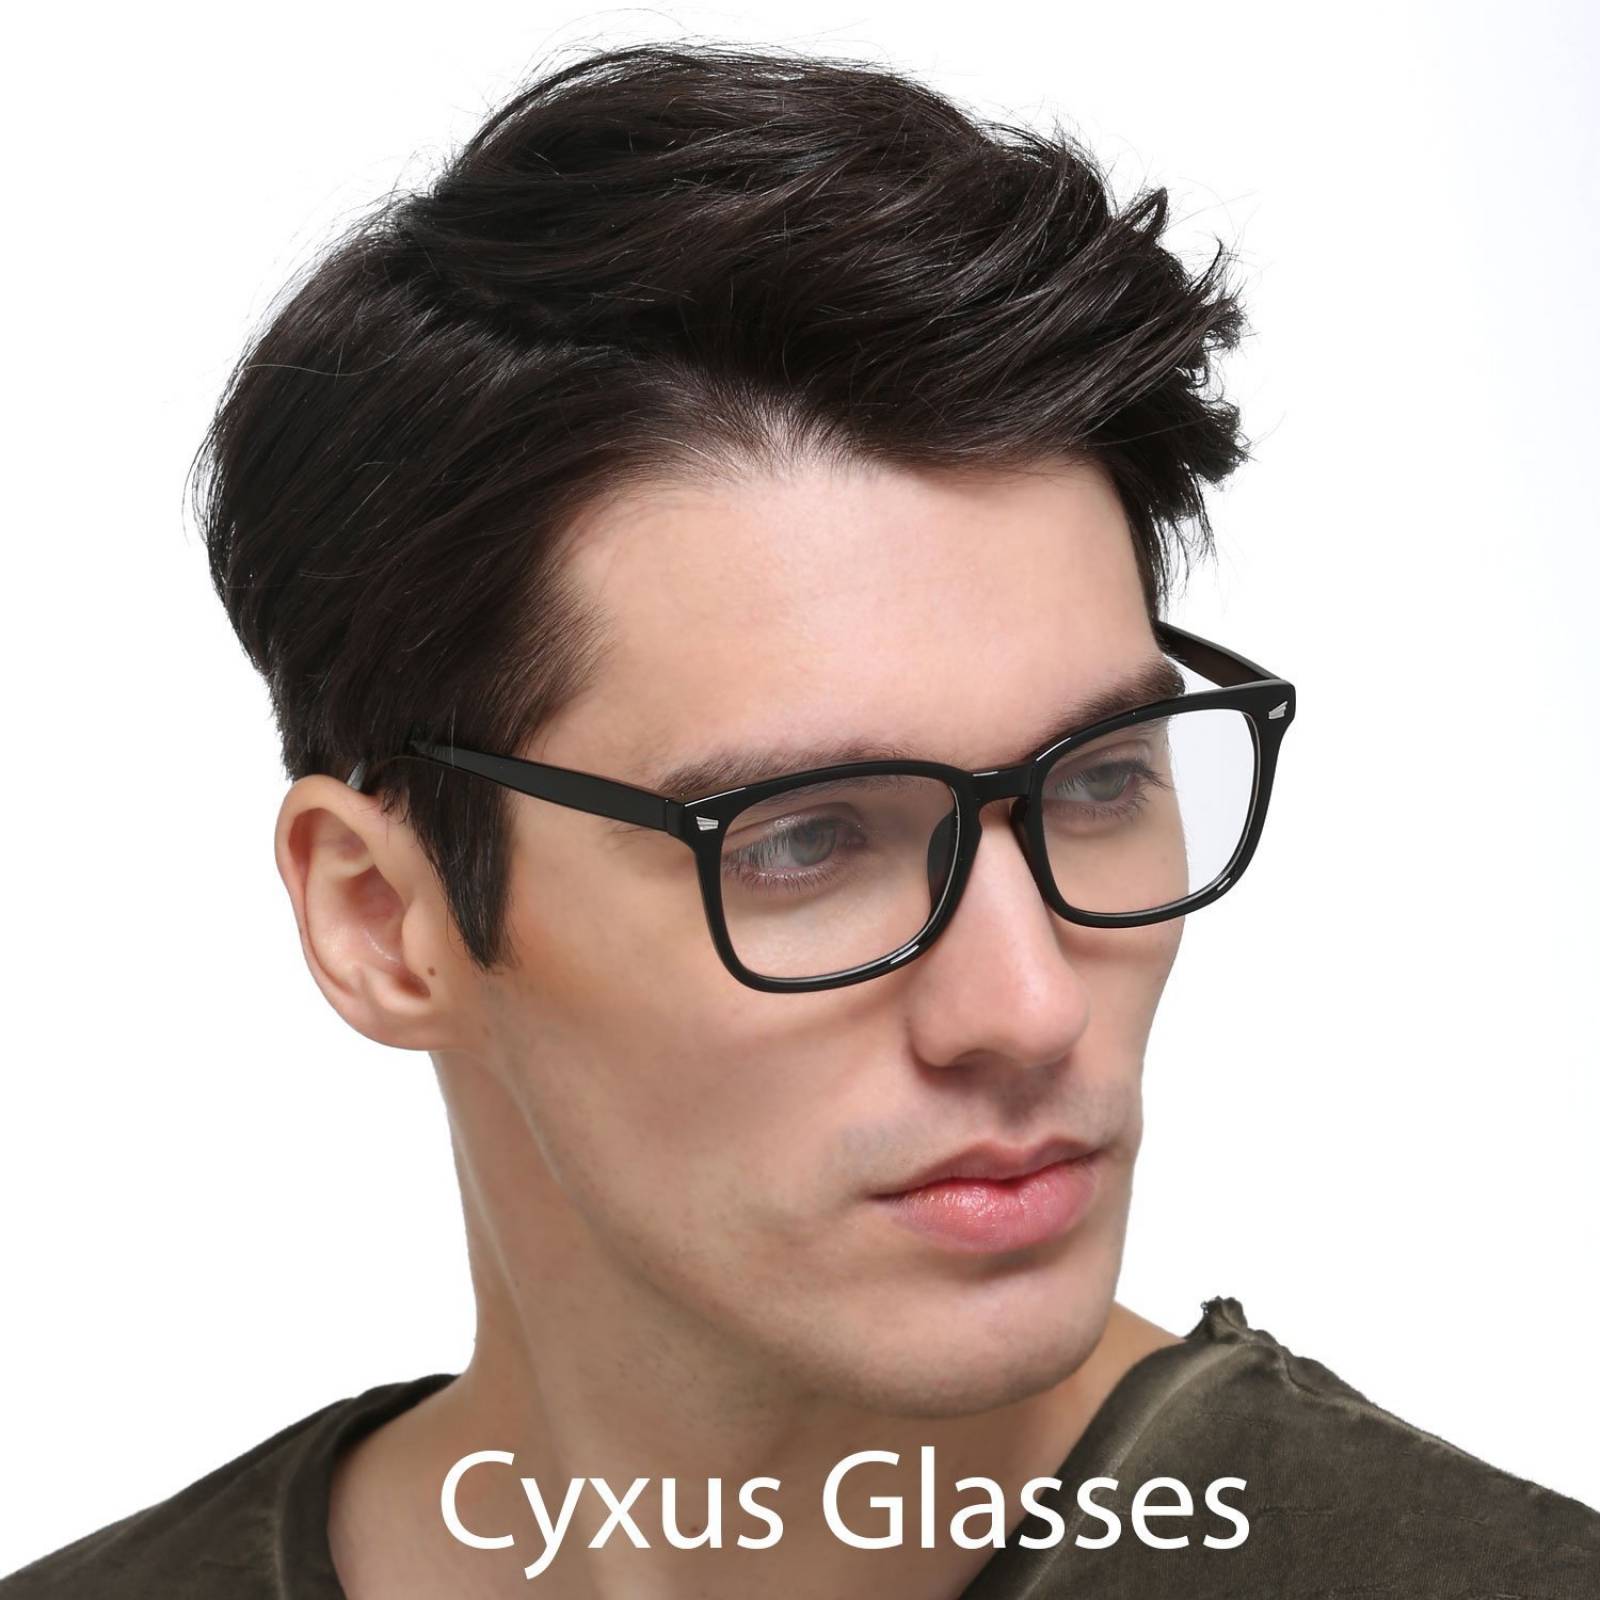 Equipo filtro luz azul Cyxus gafas bloquear dolor cab -Negro